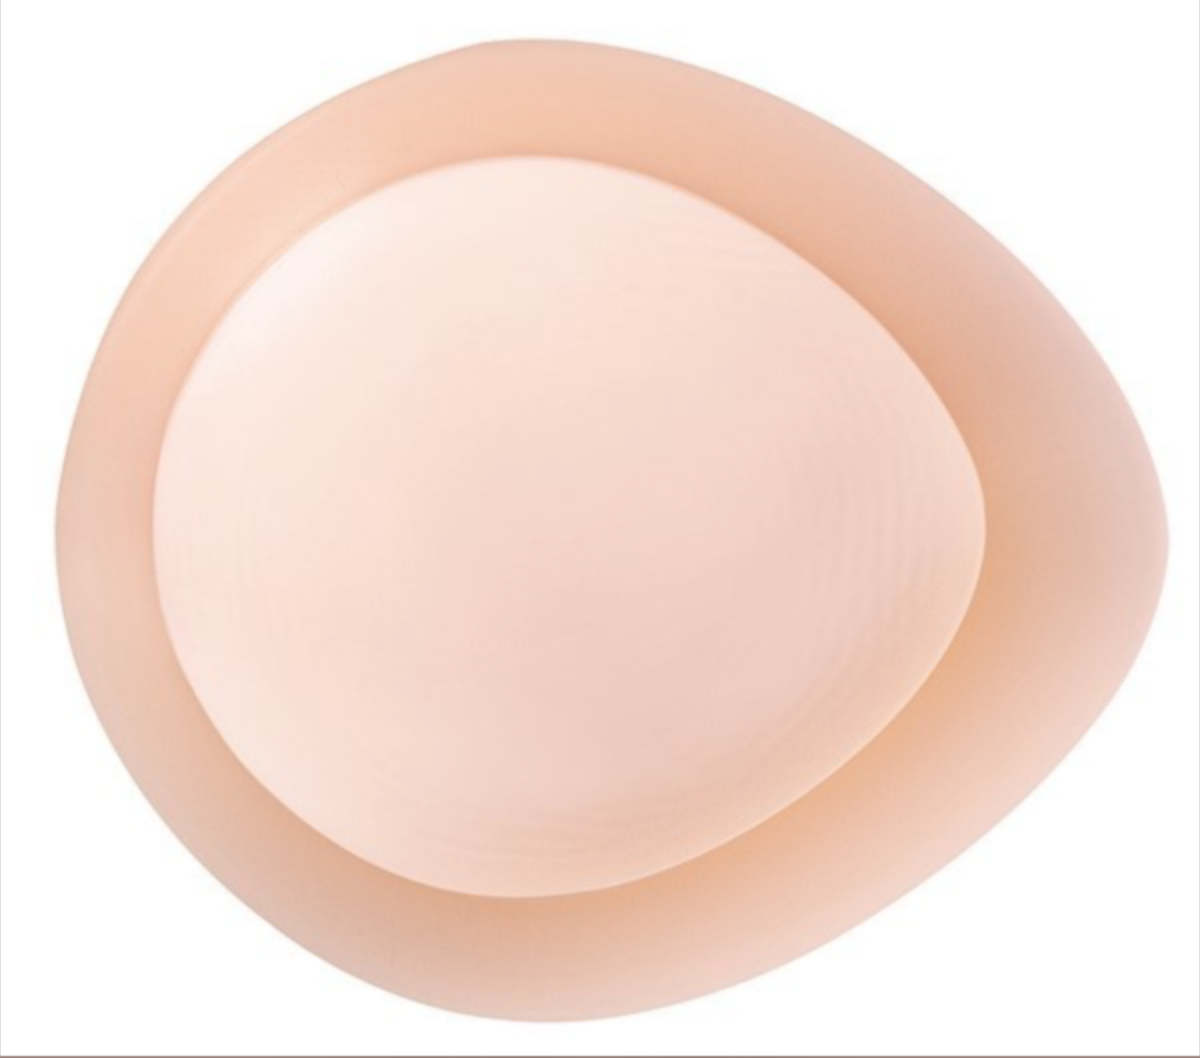 AMOENA Breast Form - Balance Natura Thin Oval TO 227